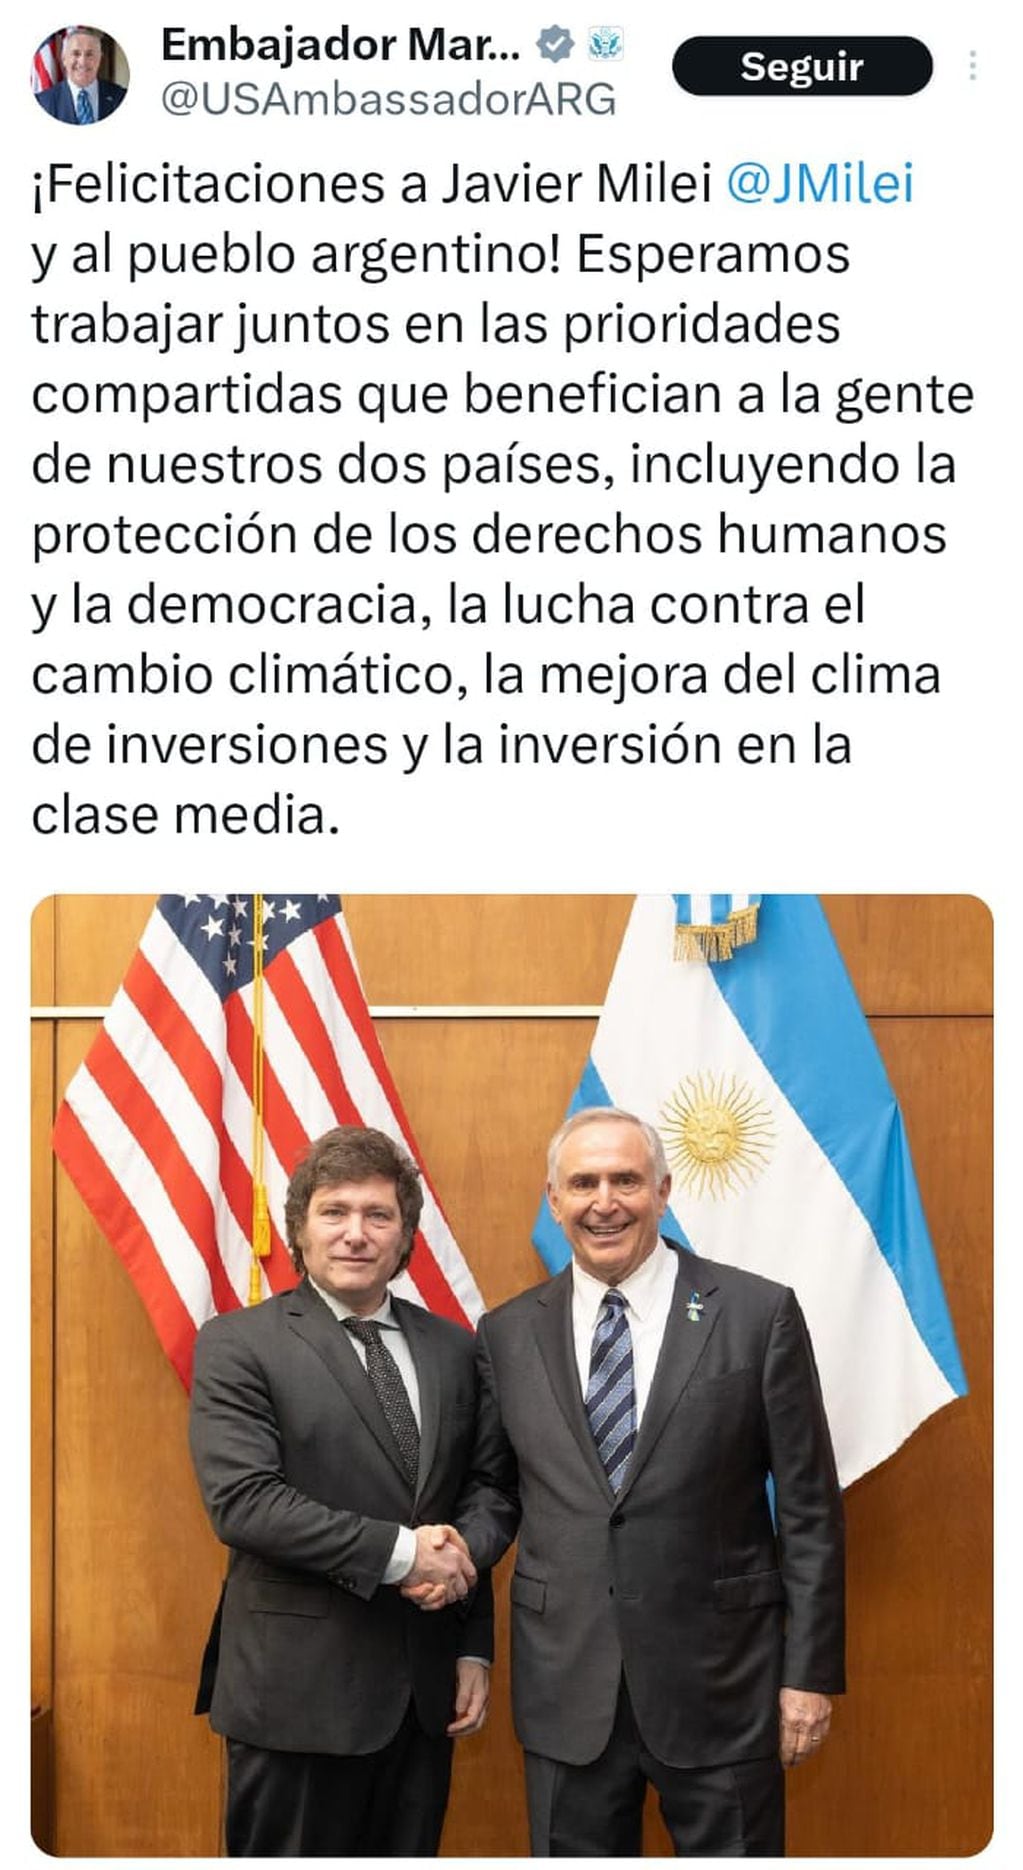 Anterior posteo de Marc Stanley, embajador de EE.UU., felicitando a Javier Milei.